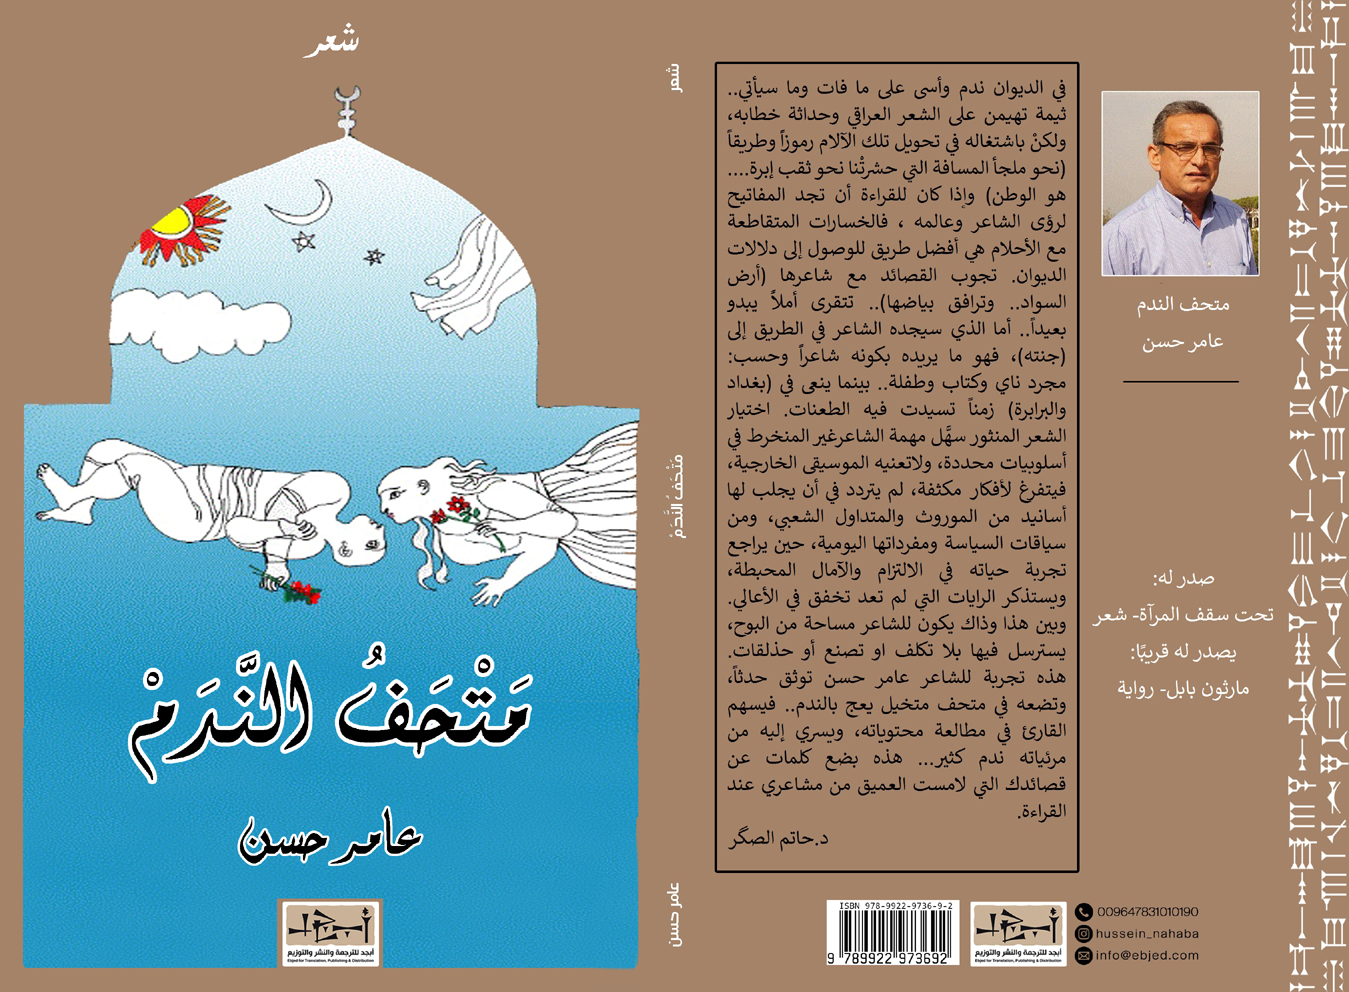 عنوان الكتاب: متحف الندم تأليف: عامر حسن التصنيف: شعر